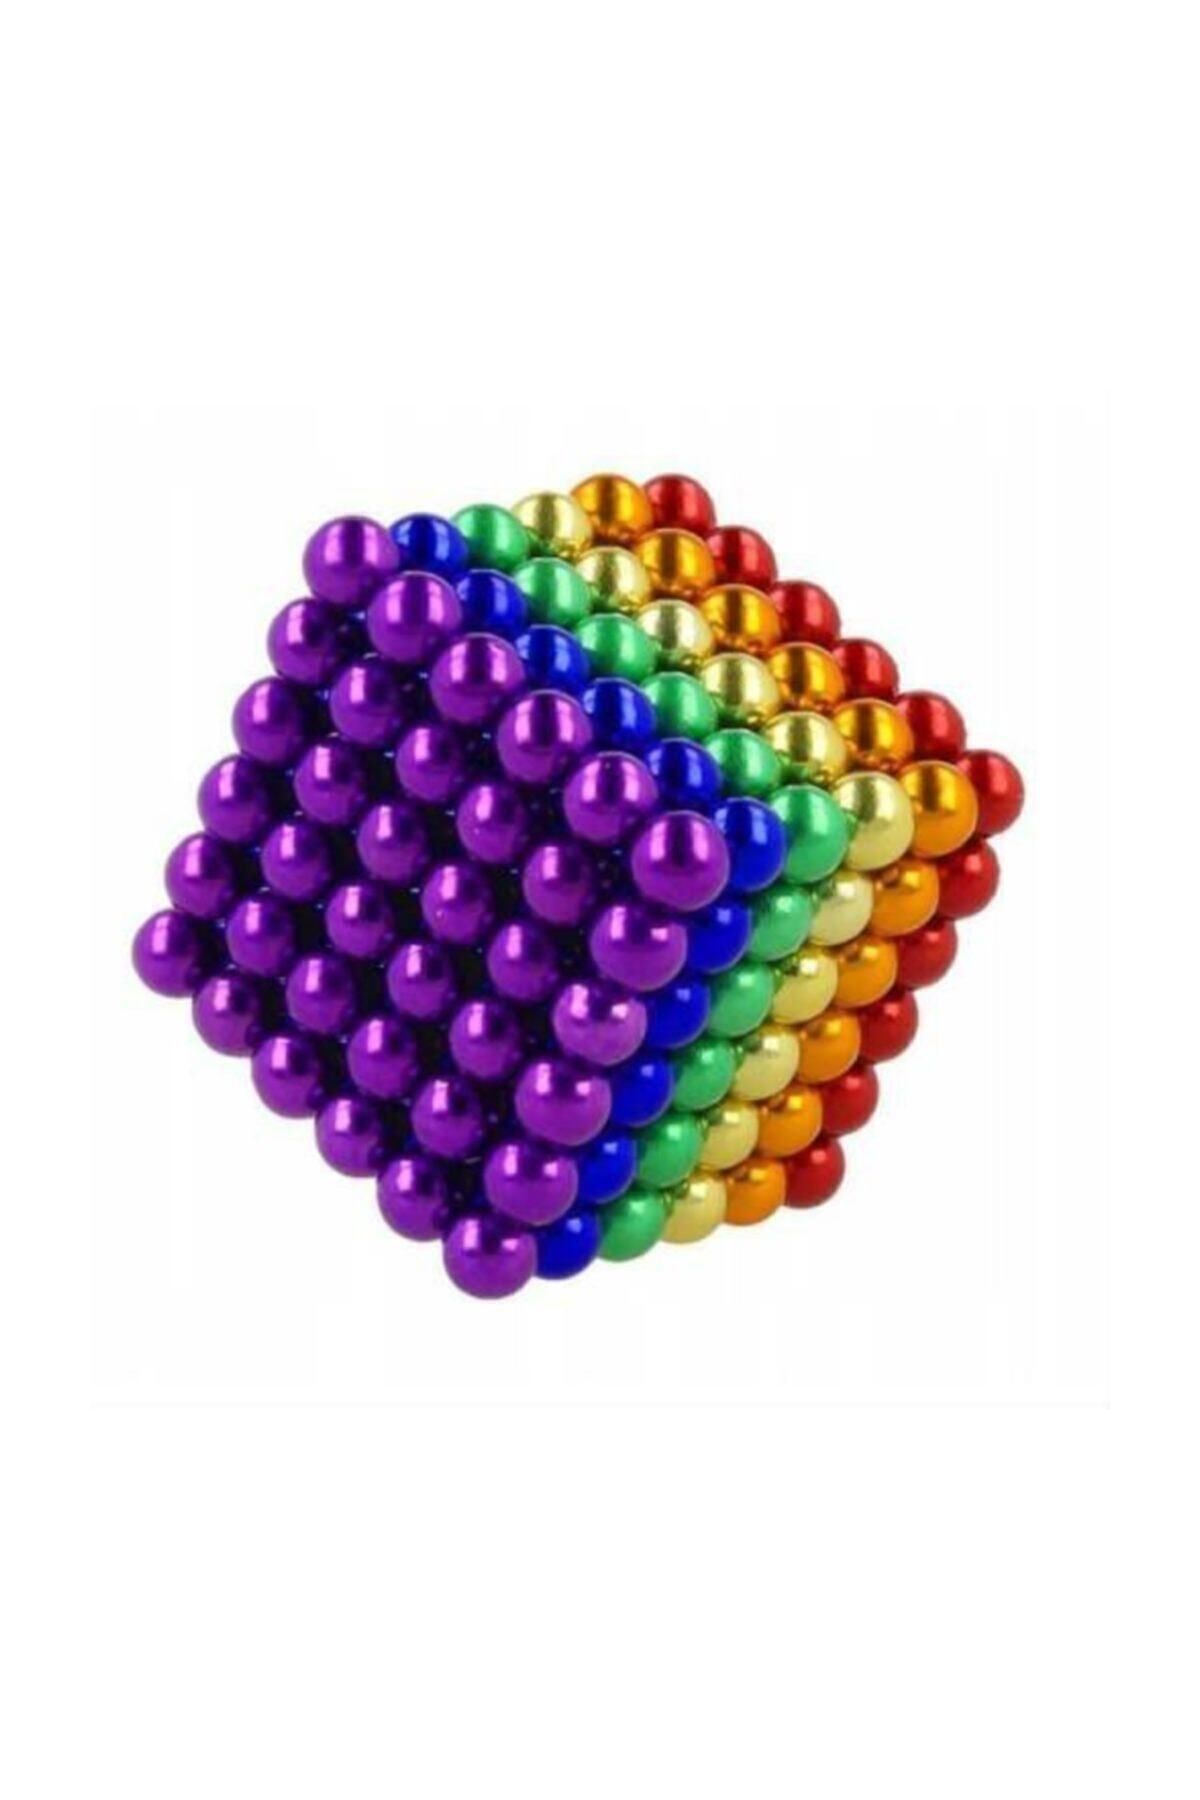 can oyuncak 6 Renkli 5mm 216 Adet Neocube Neodyum Mıknatıs Küp Sihirli Manyetik Toplar